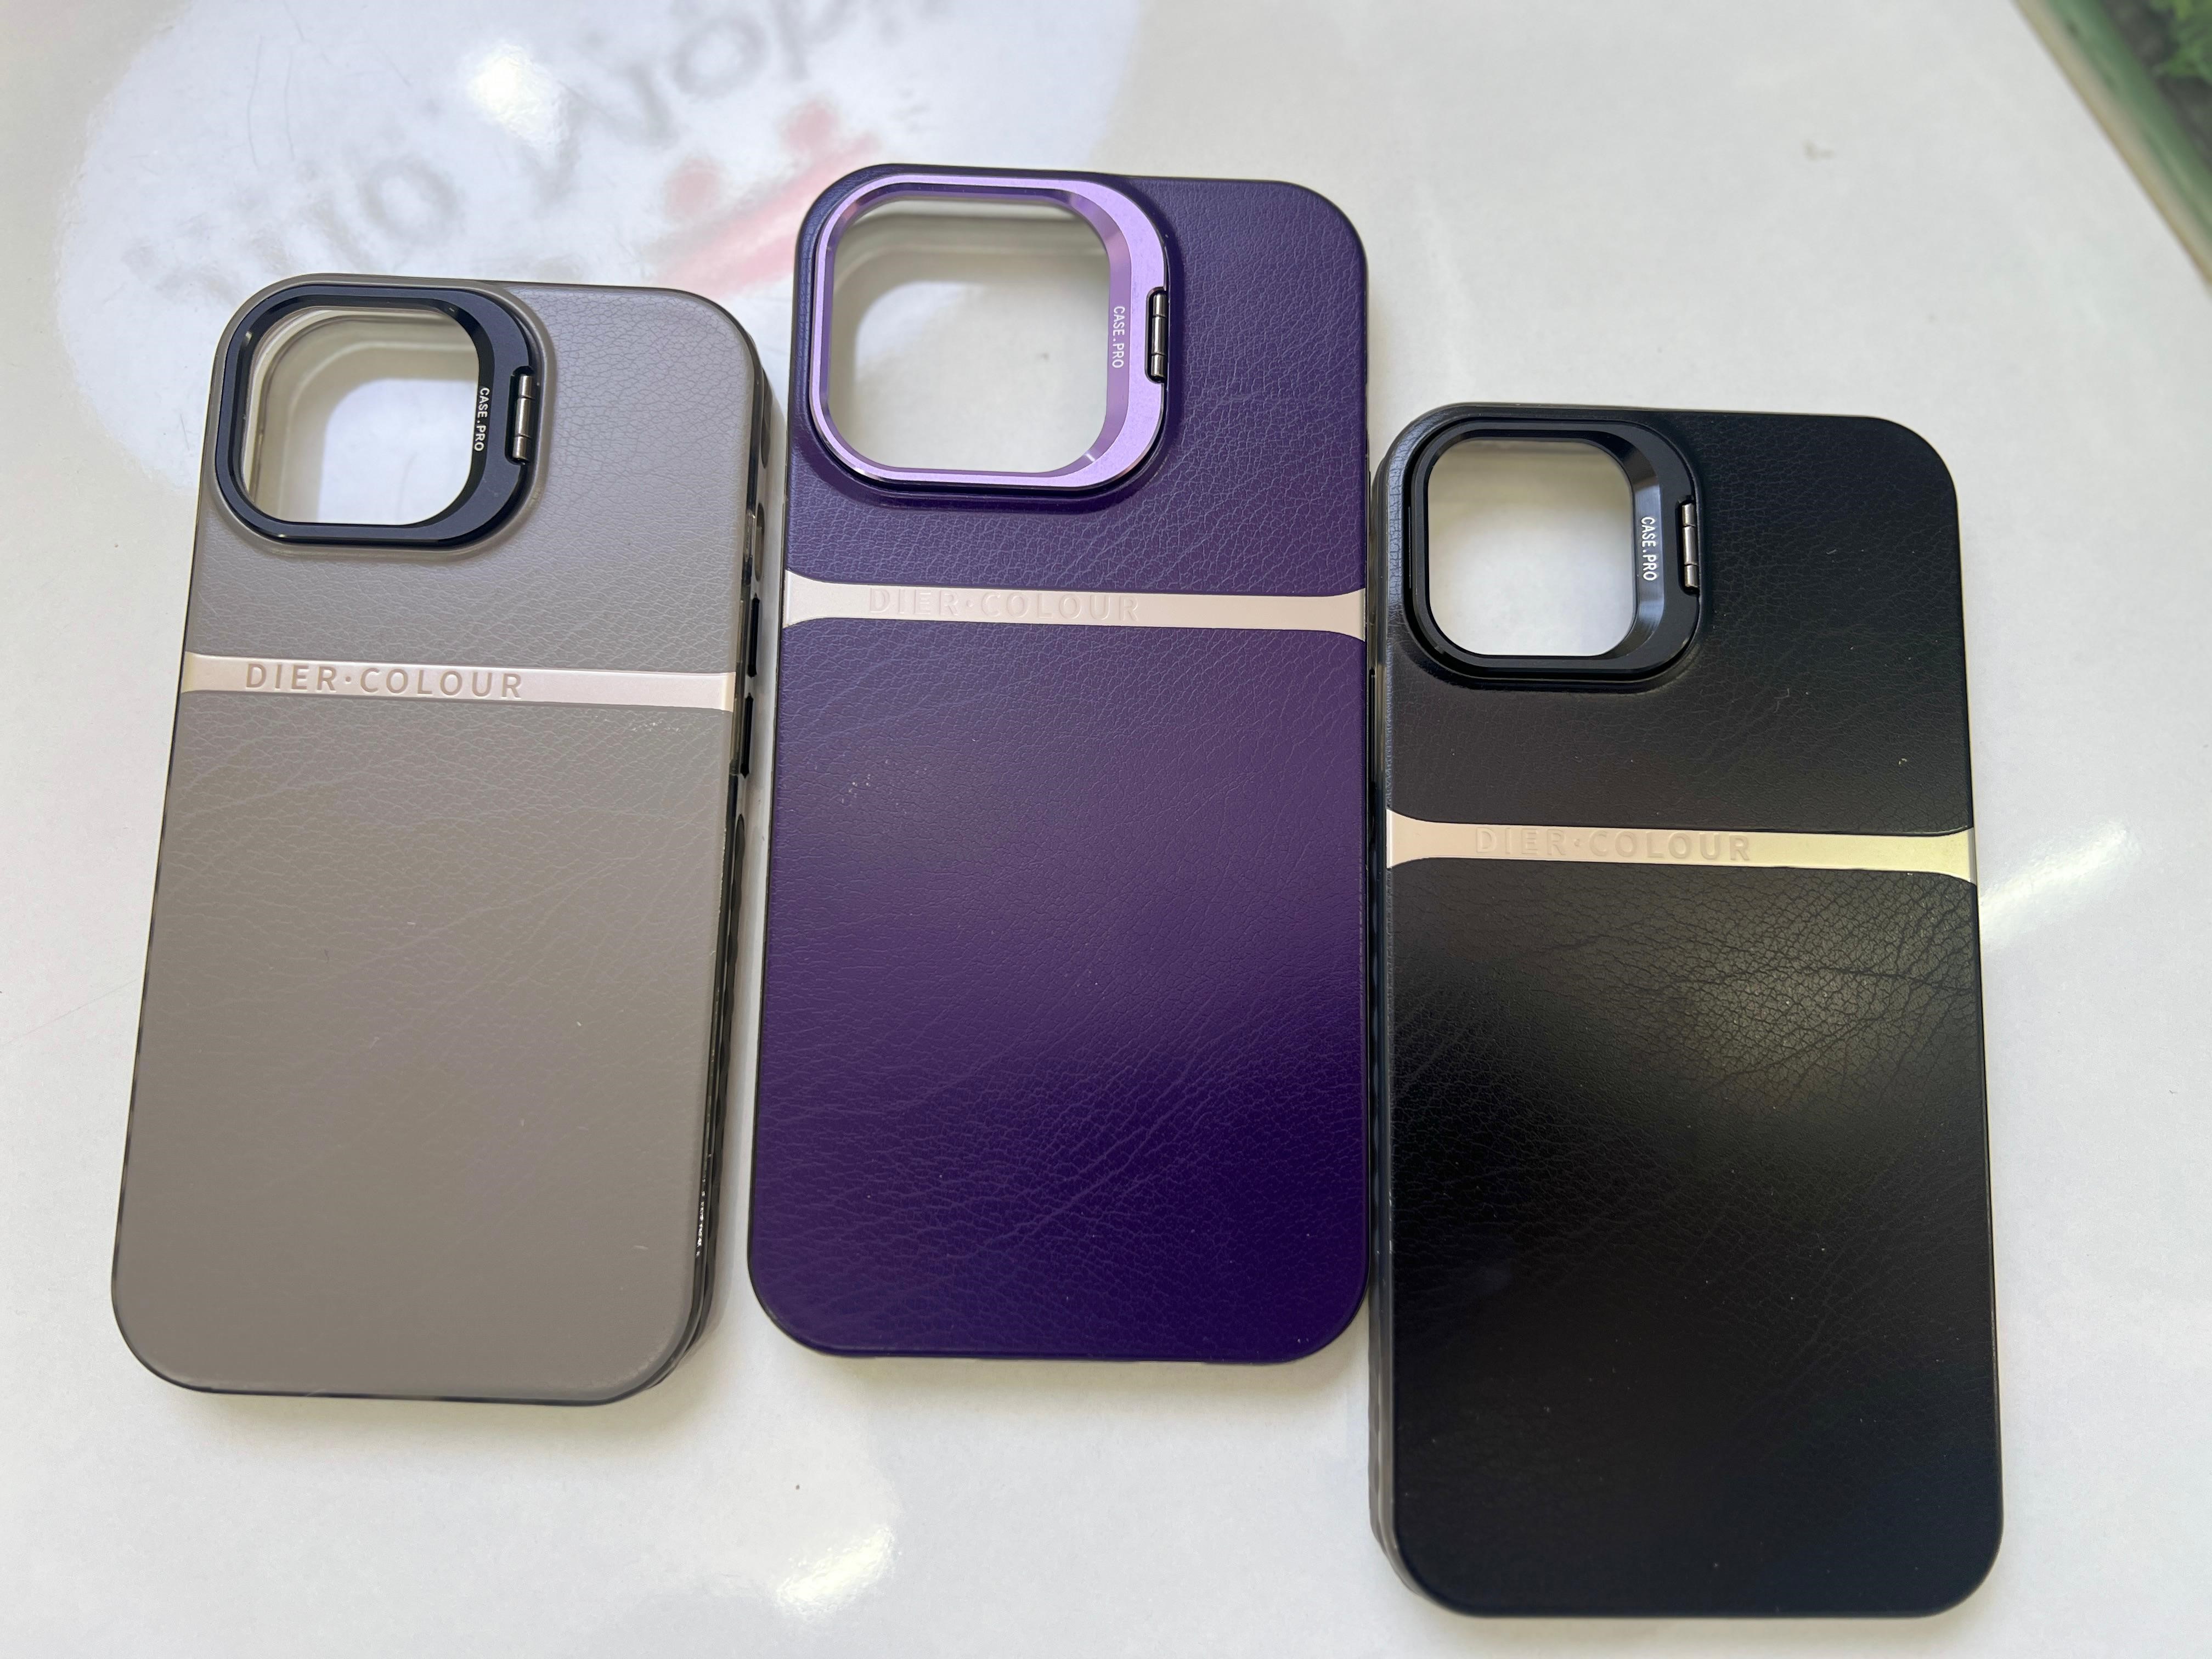  Premium Leather Type Cases for iPhones 11 - 15